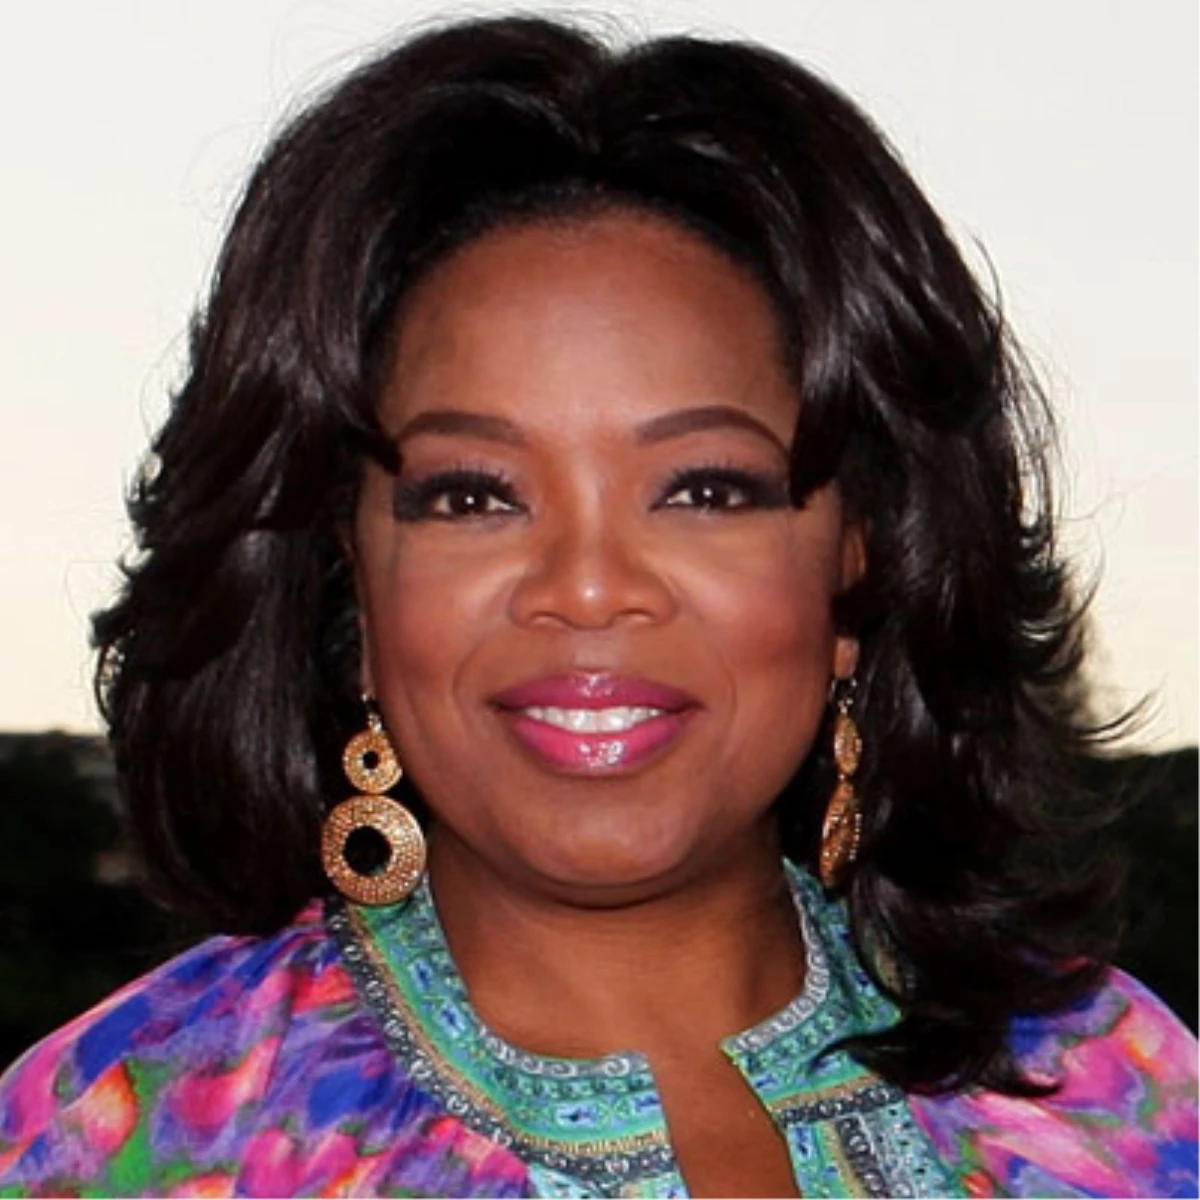 Oprah Winfrey, Irkçılık Tartışmalarını Alevlendirdiği İçin Üzgün Olduğunu Söyledi